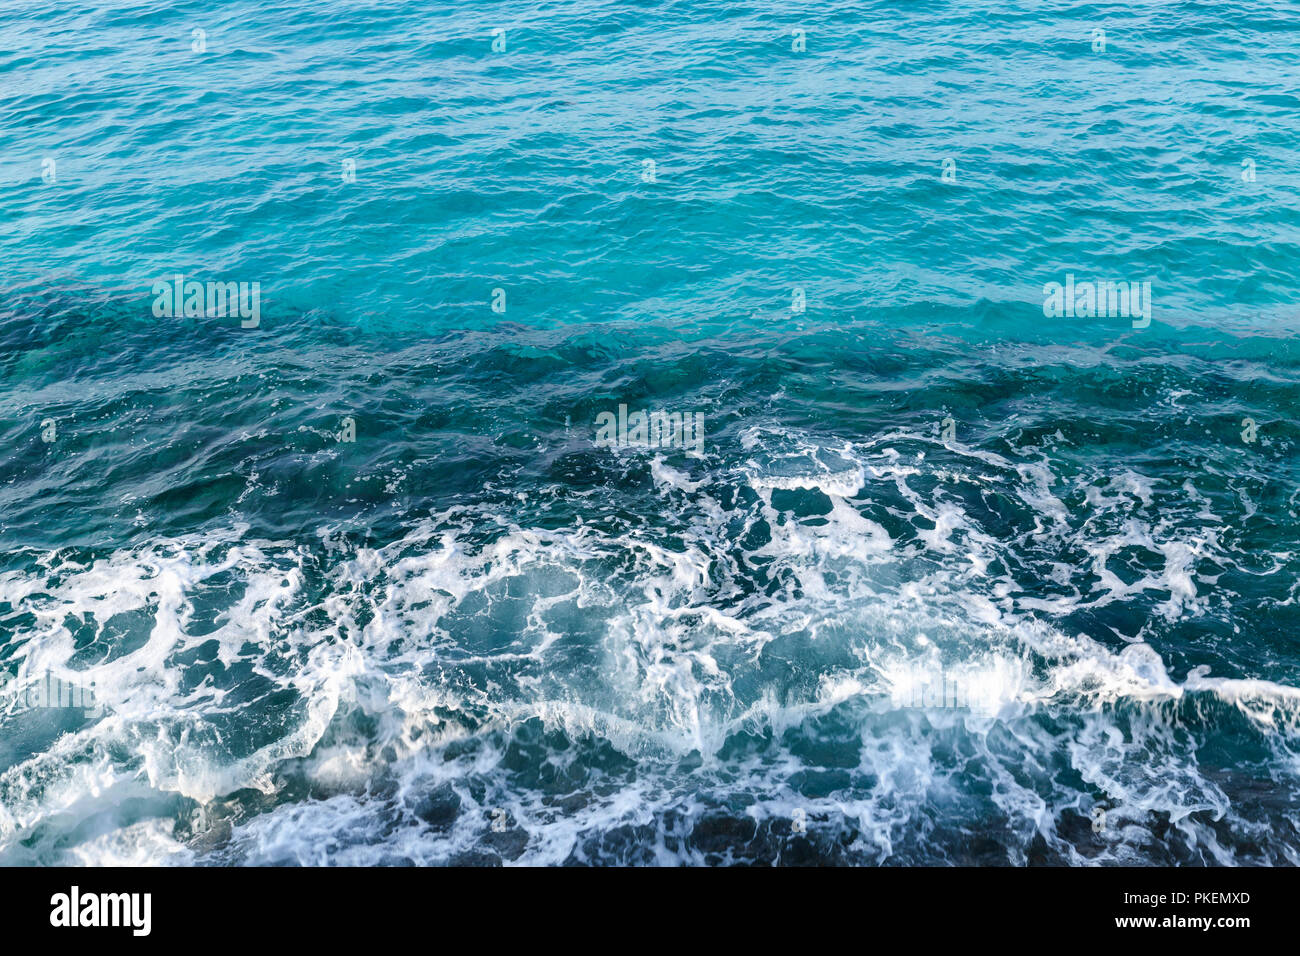 Tief blauen Wasser mit Ufer Schaum, Hintergrund Foto von Küste von Zypern Insel genommen, Mittelmeer Stockfoto